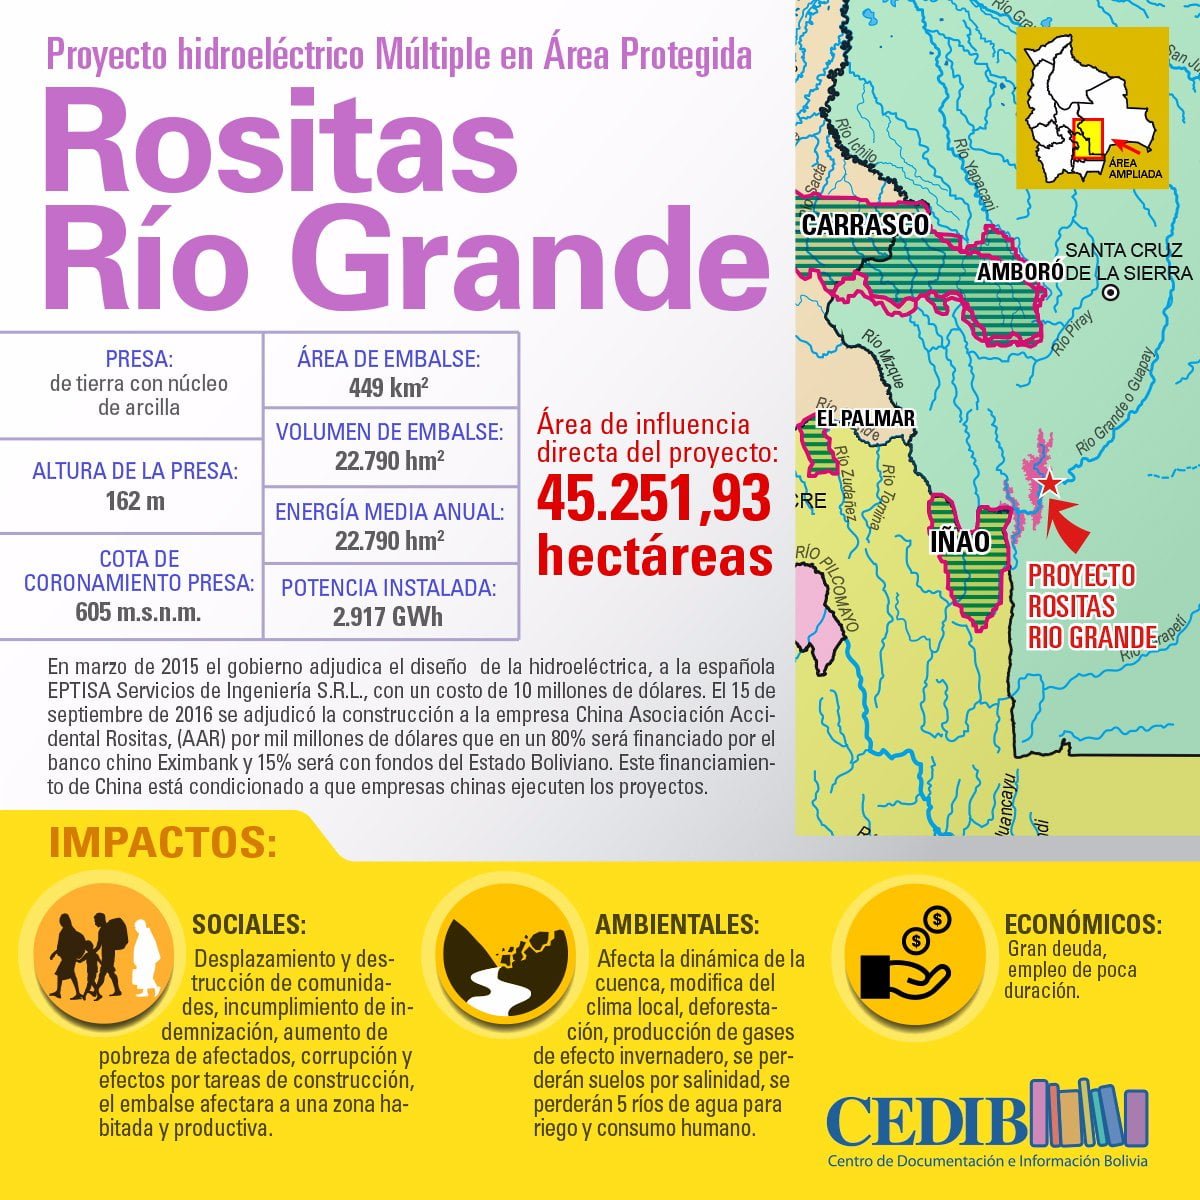 Río grande Rositas Proyecto hidroeléctrico en área protegida